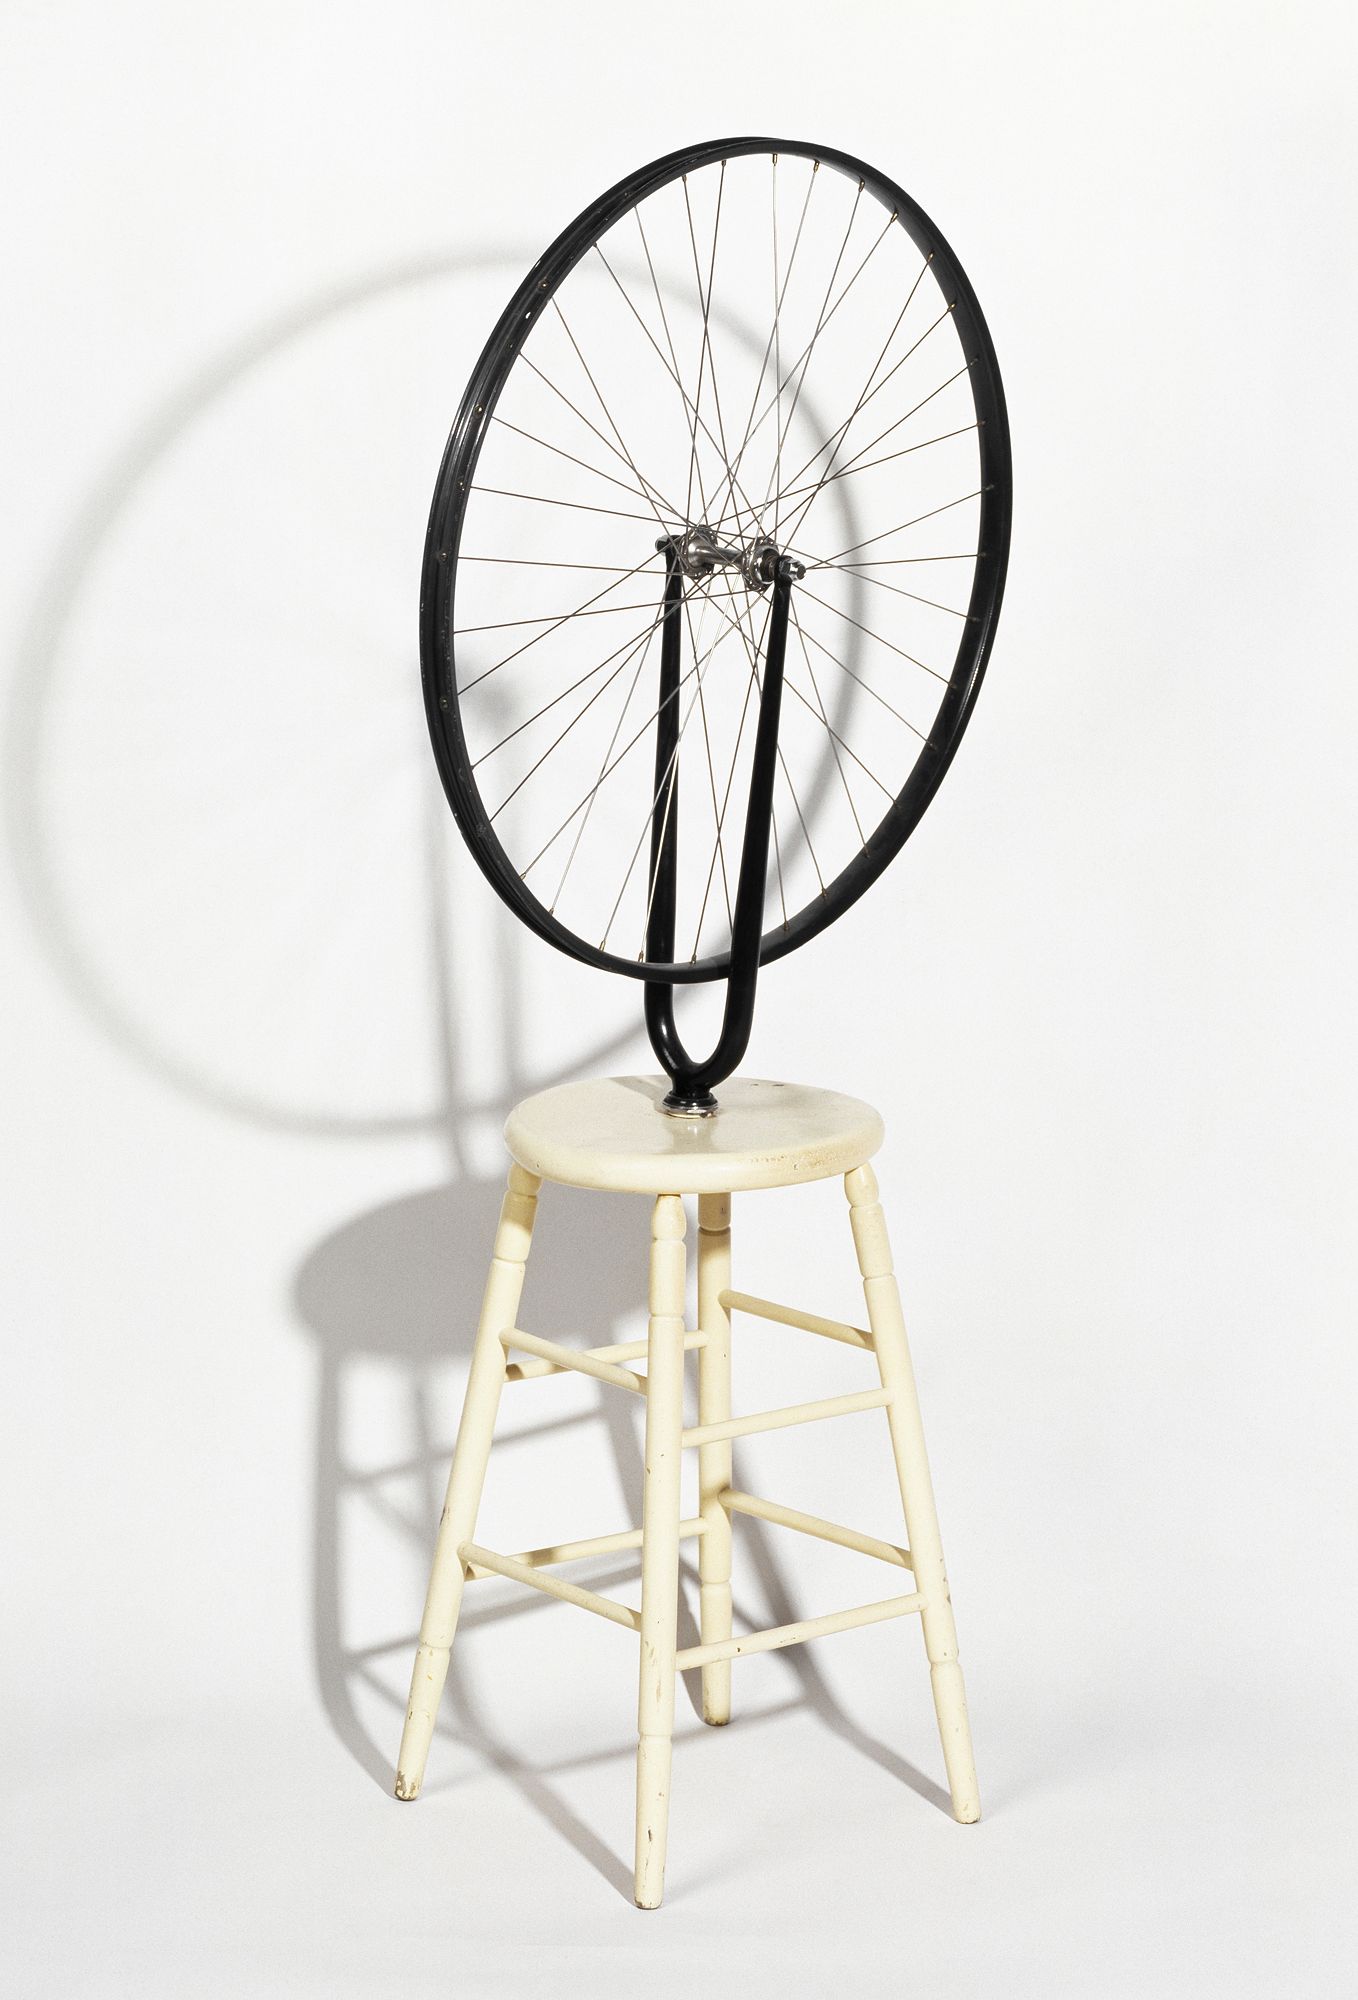 F094-duchamp-roue-bicyclette art contemporain